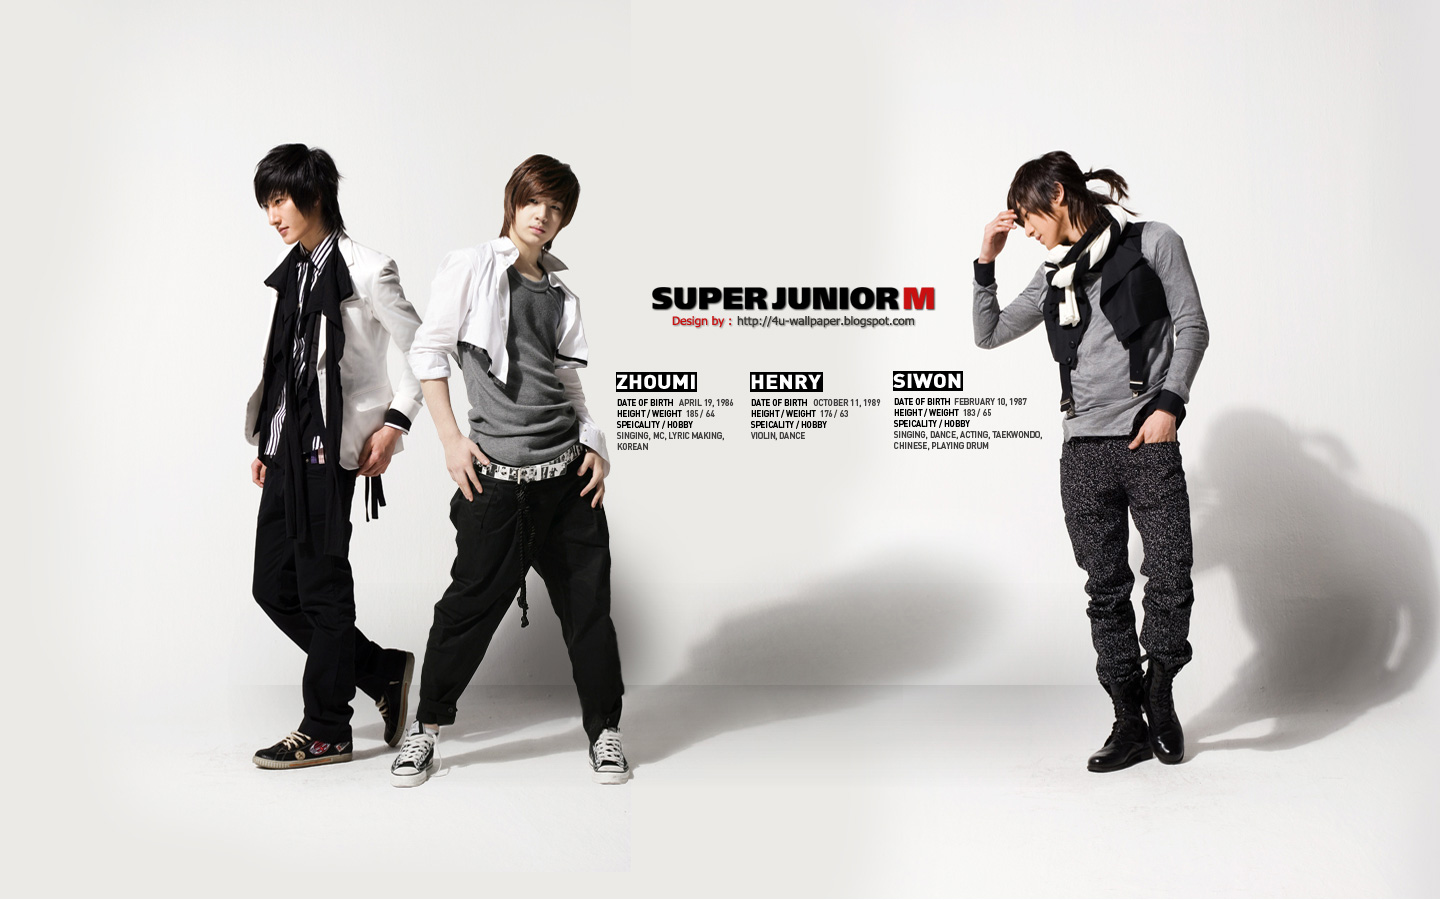 Wallpaper Super Junior M The First Album ME